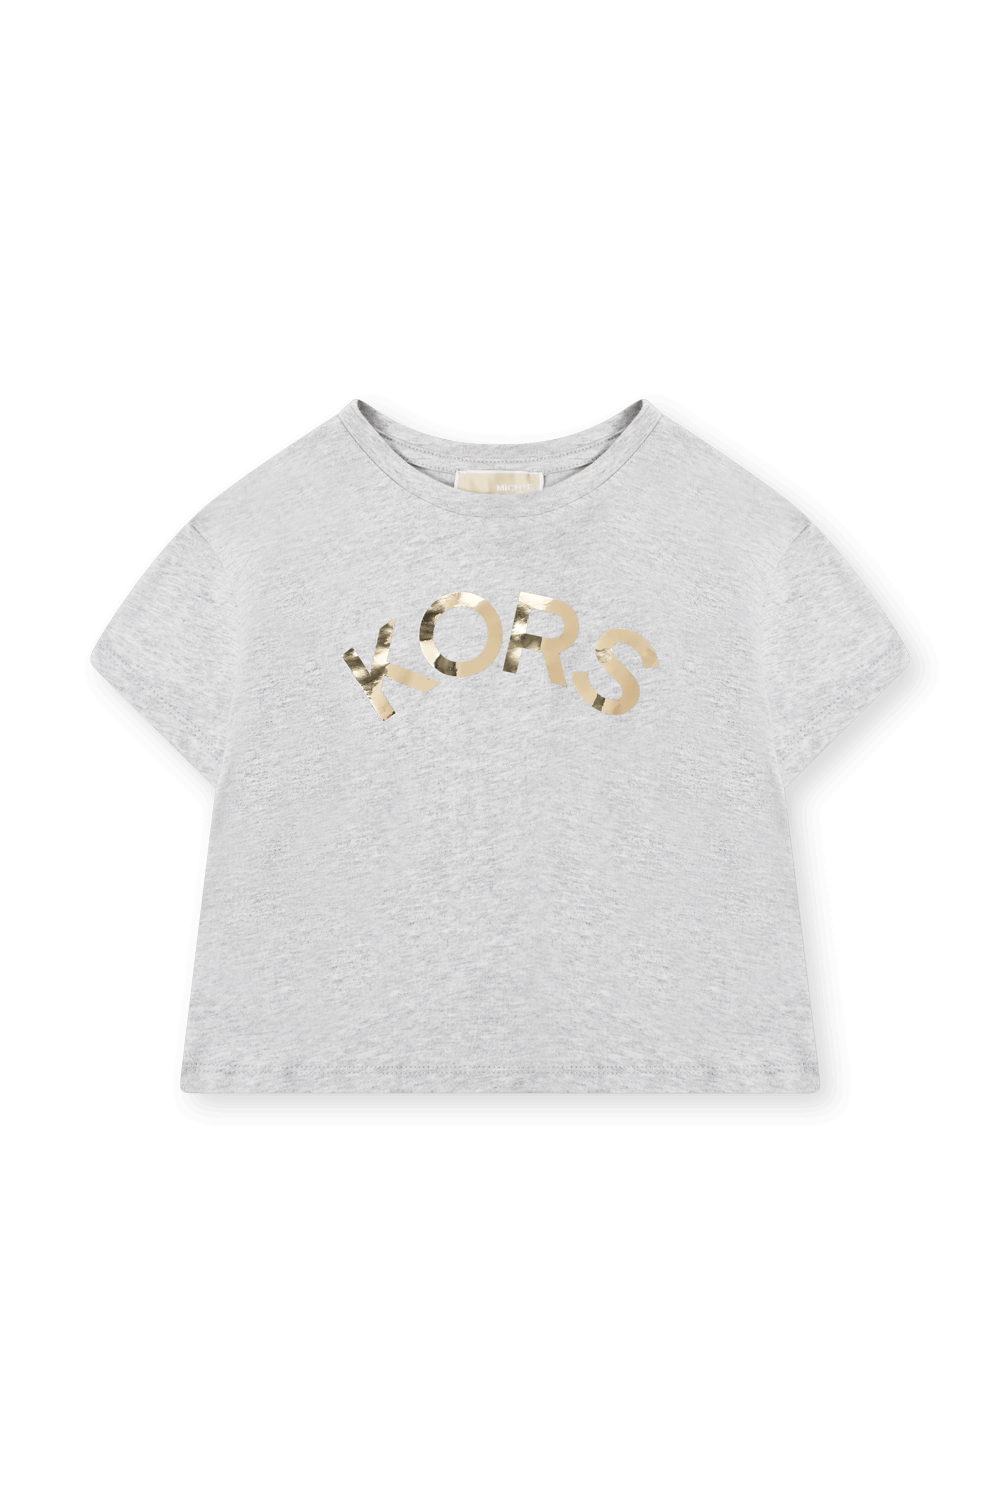 חולצת טי עם הדפס - גילאי 6-12 MICHAEL KORS KIDS